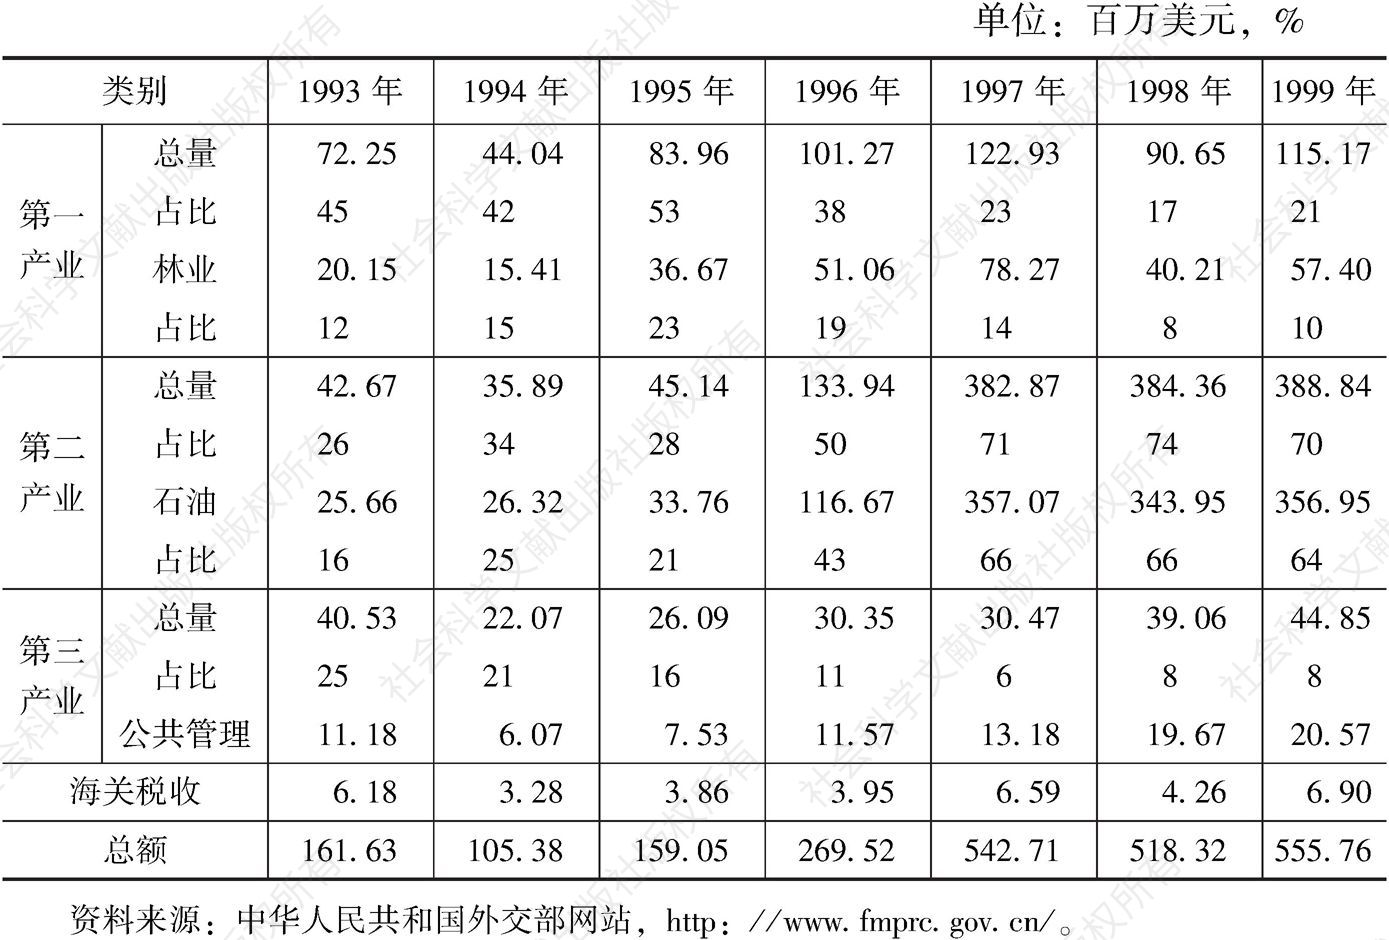 表4-2 1993～1999年赤道几内亚三大产业、主要产业产值及占比